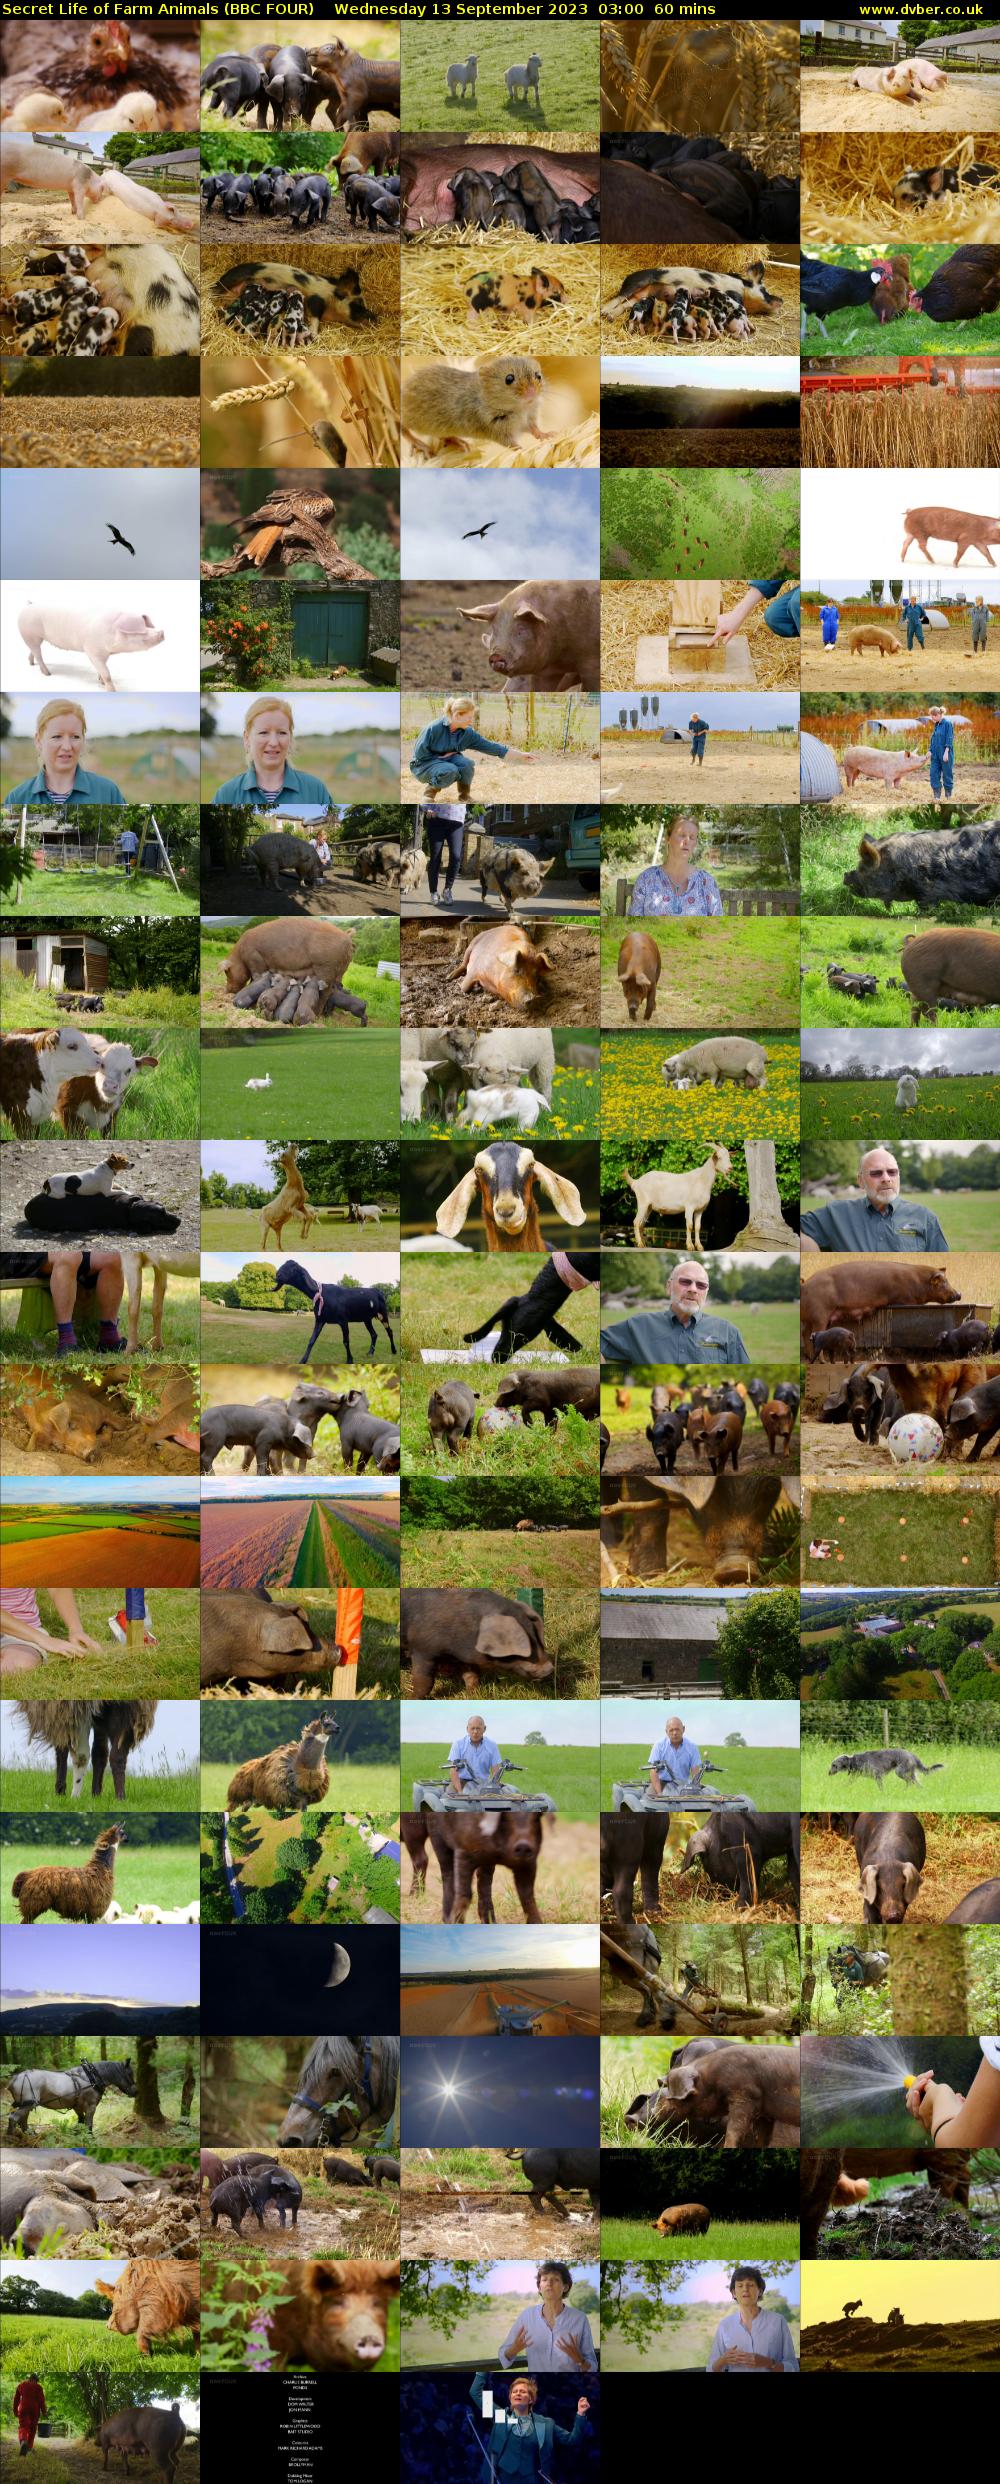 Secret Life of Farm Animals (BBC FOUR) Wednesday 13 September 2023 03:00 - 04:00